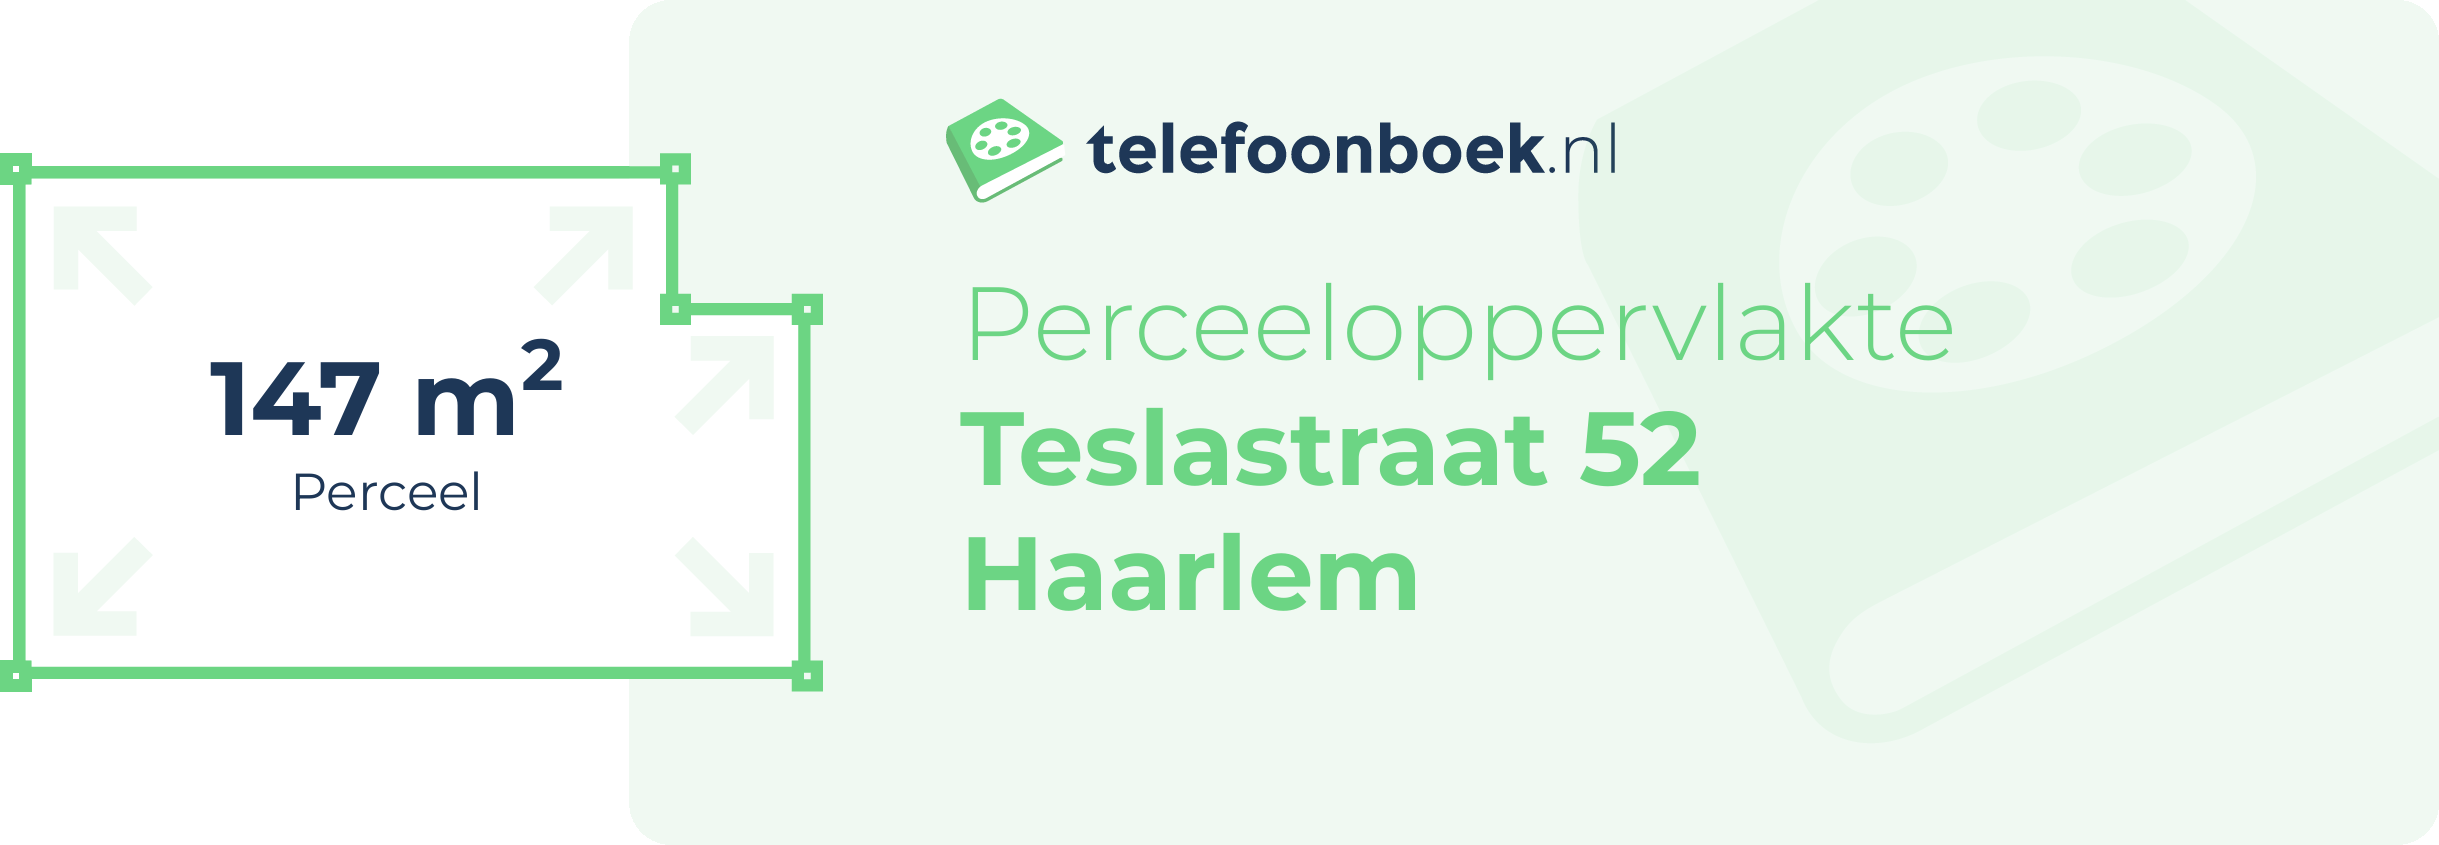 Perceeloppervlakte Teslastraat 52 Haarlem